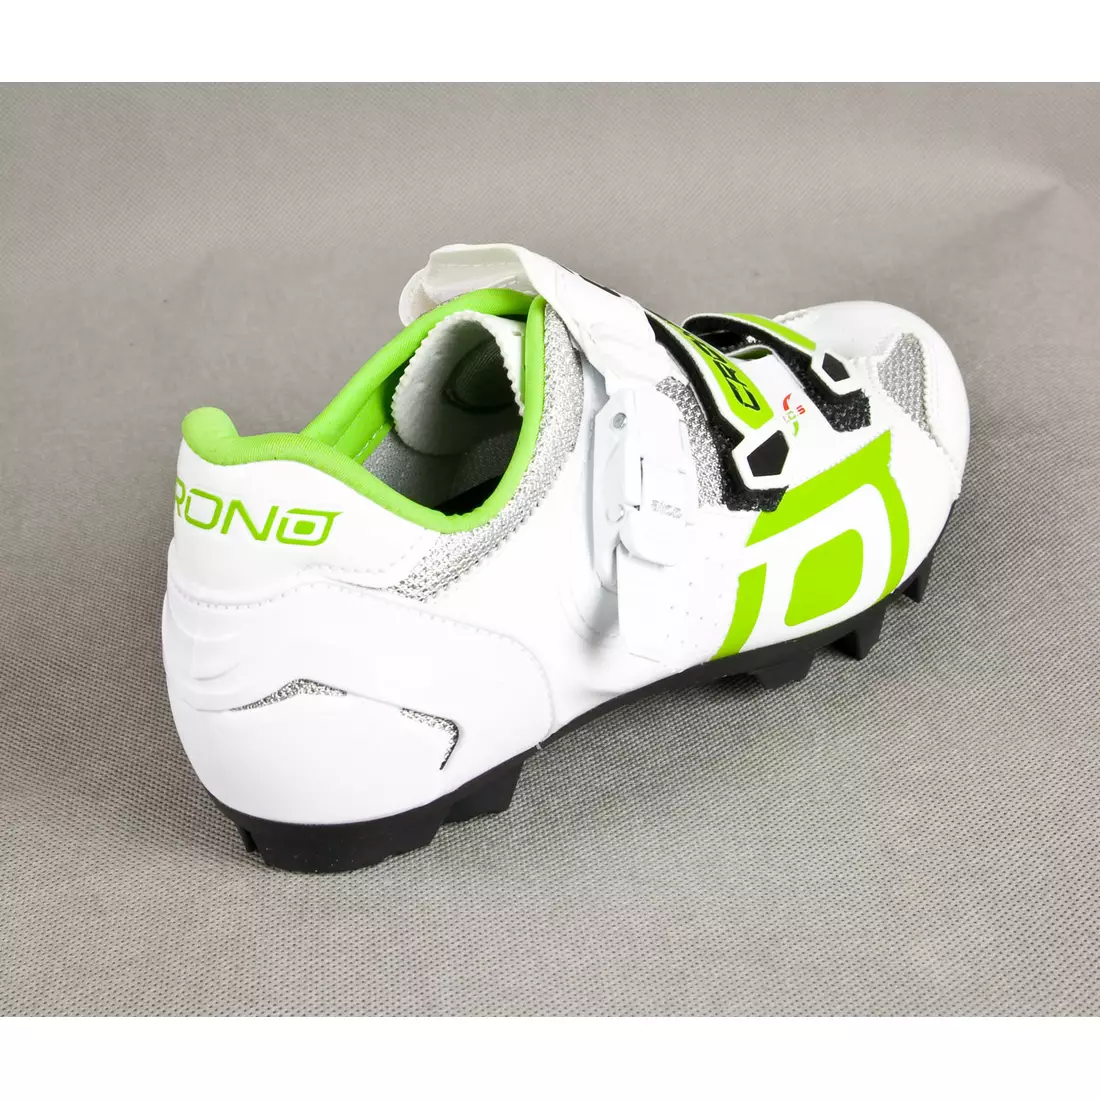 CRONO TRACK - Pantofi de ciclism MTB - culoare: Alb și verde